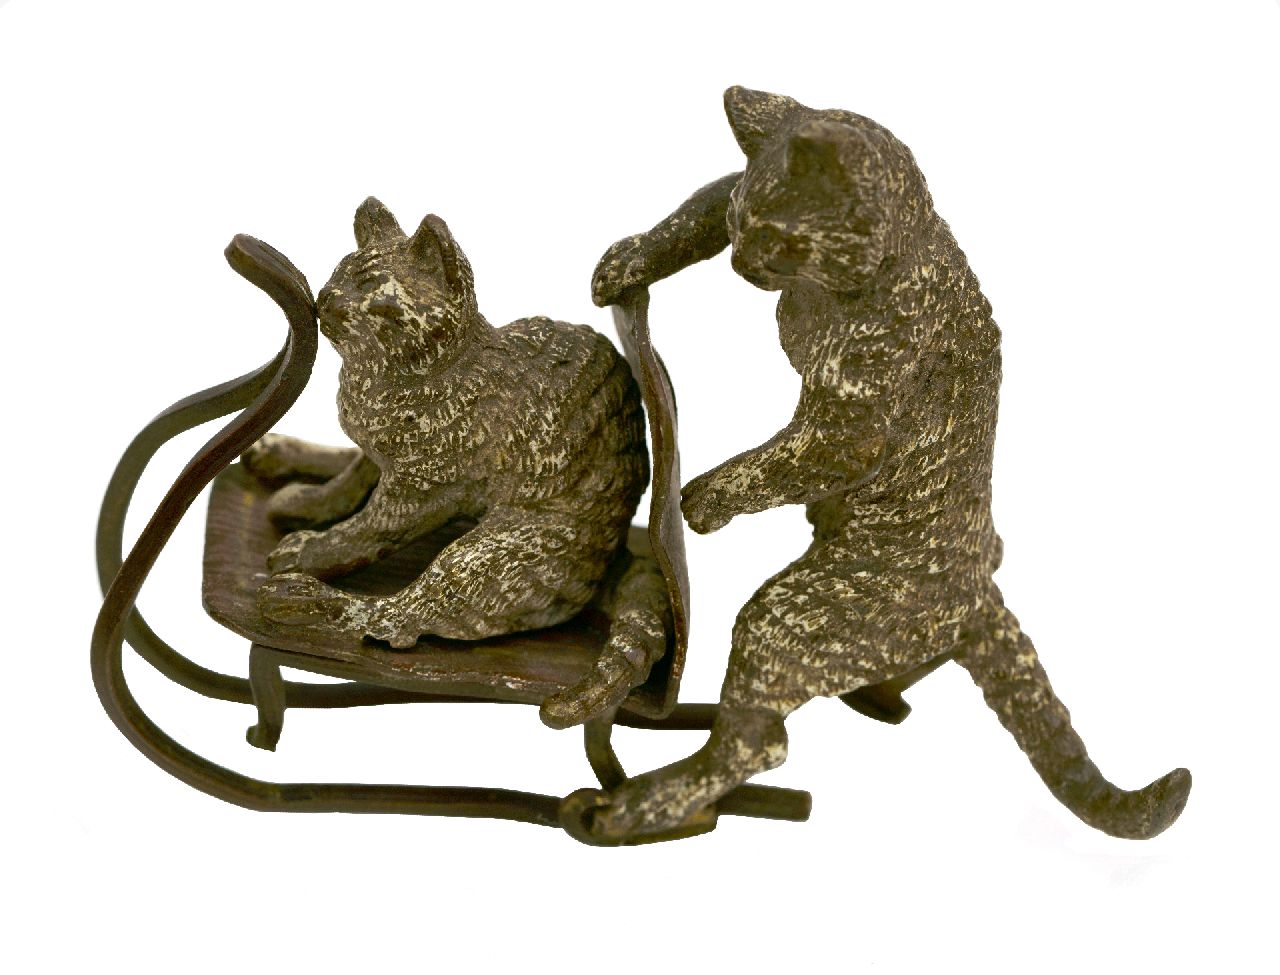 Weense School   | Weense School | Sculptures and objects offered for sale | Zwei bronzene Katzen auf Schiebschlitten, bronze 6.4 x 8.5 cm